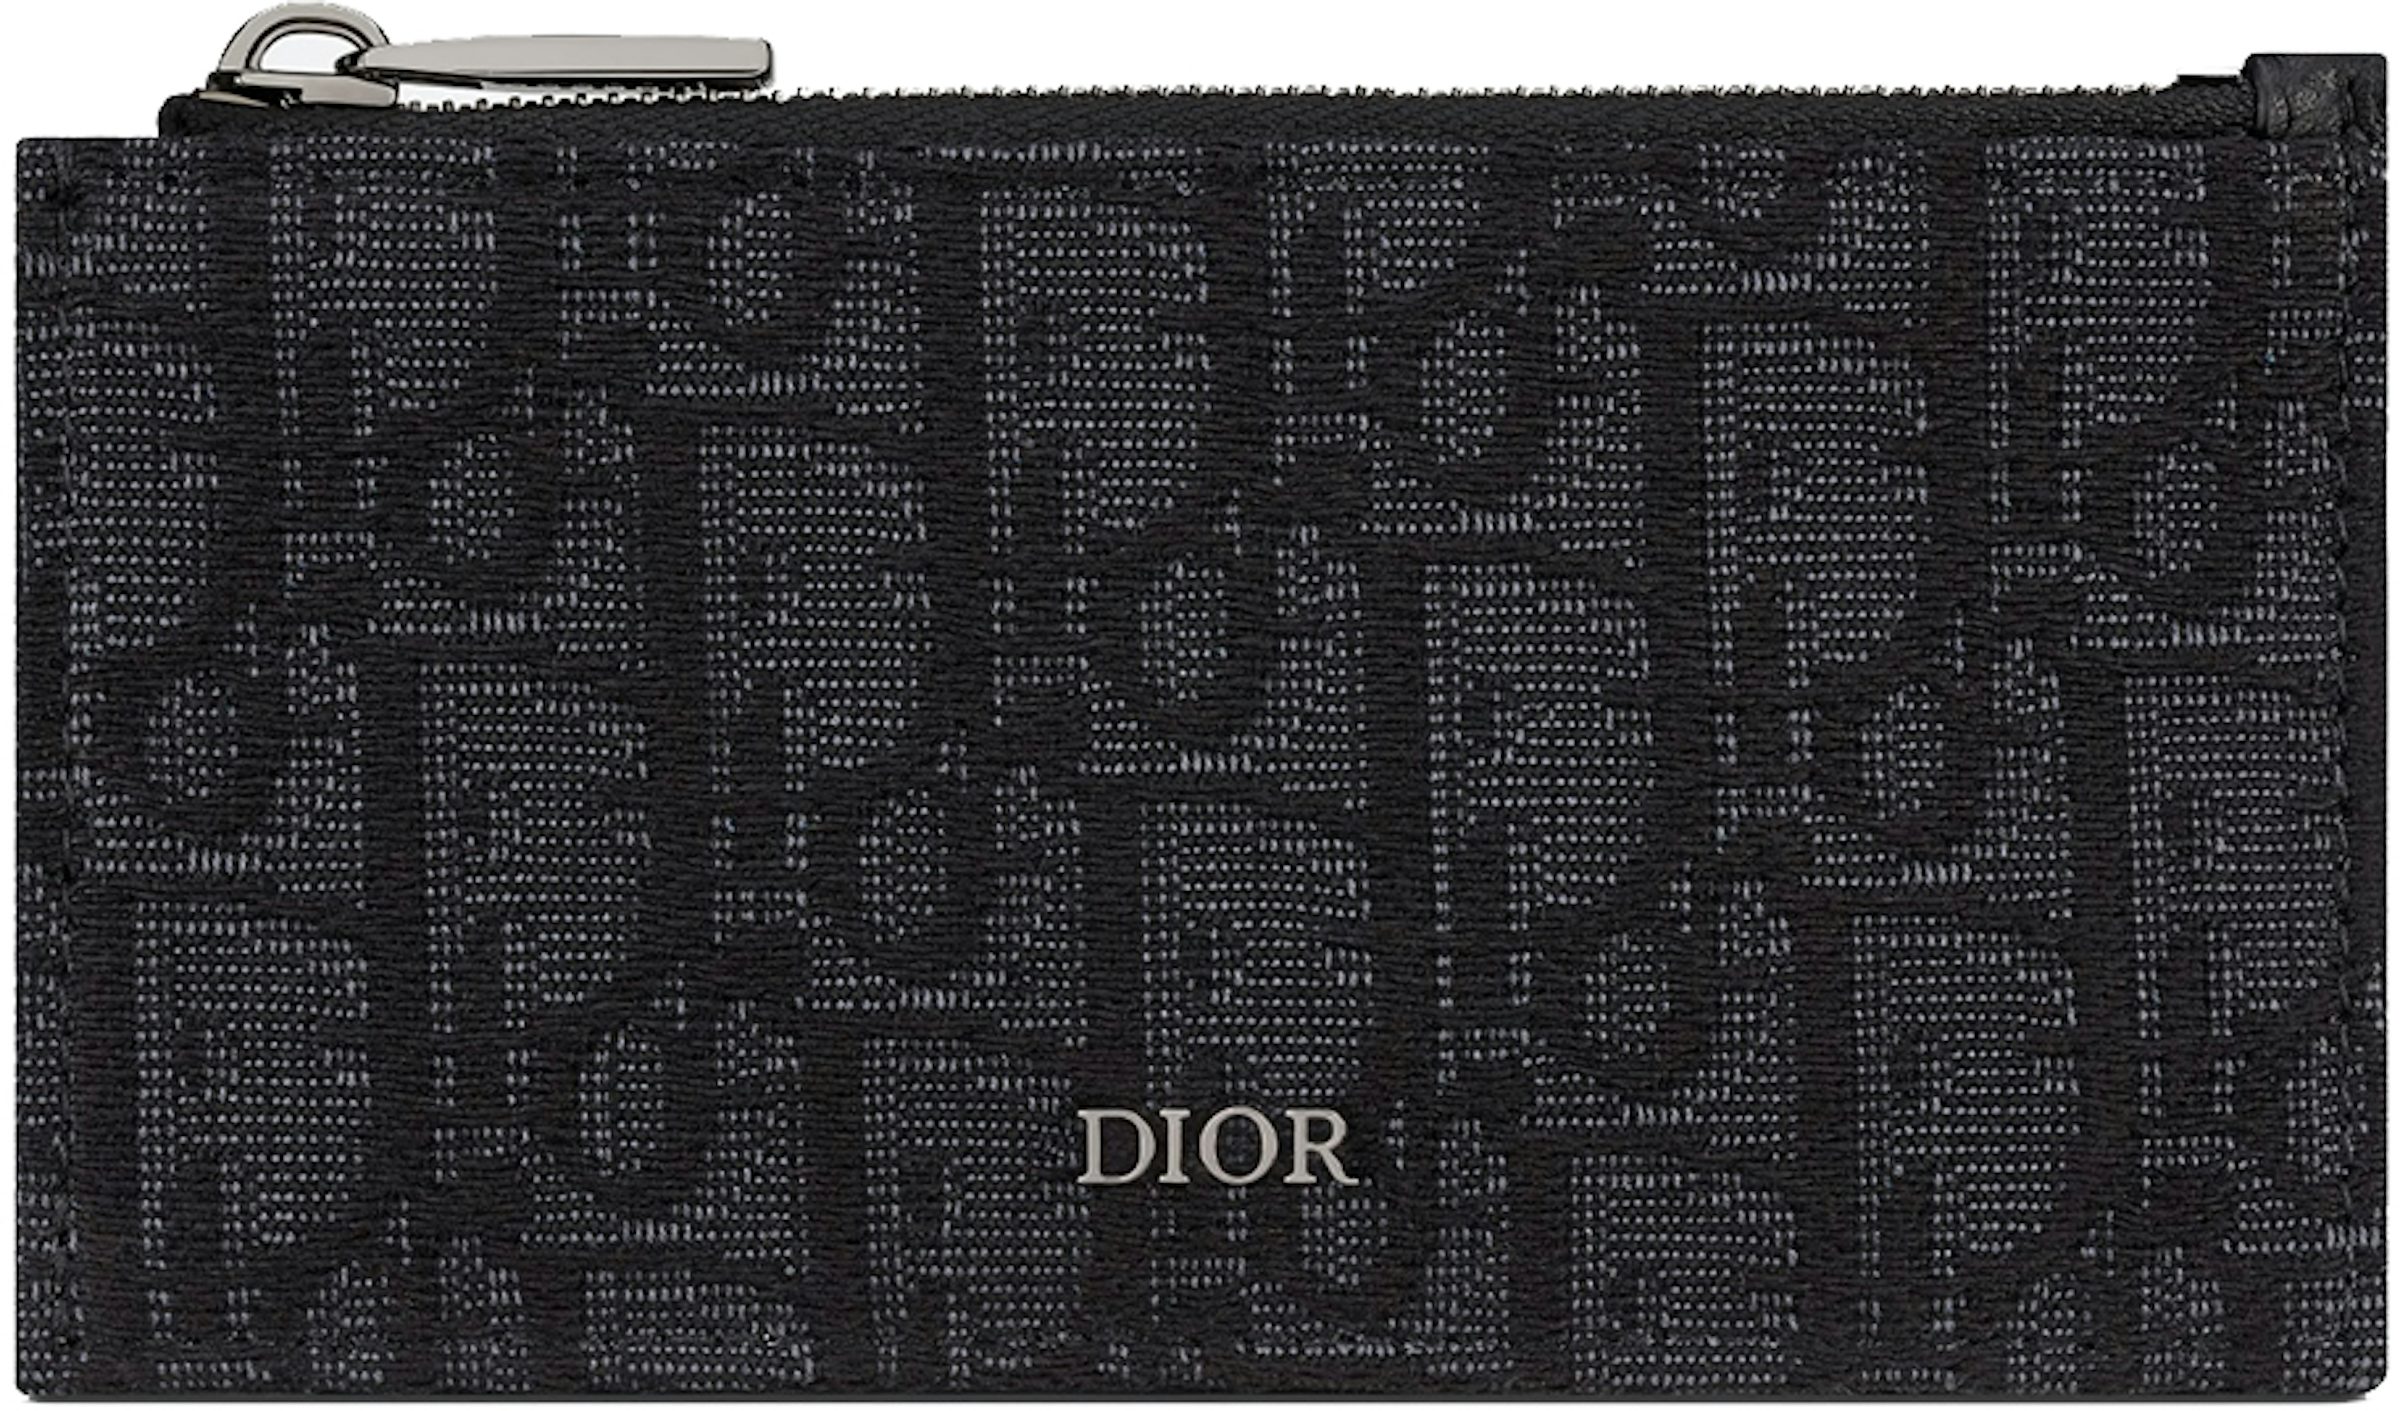 Dior Oblique Jacquard (6 Slot) Card Holder Beige Black